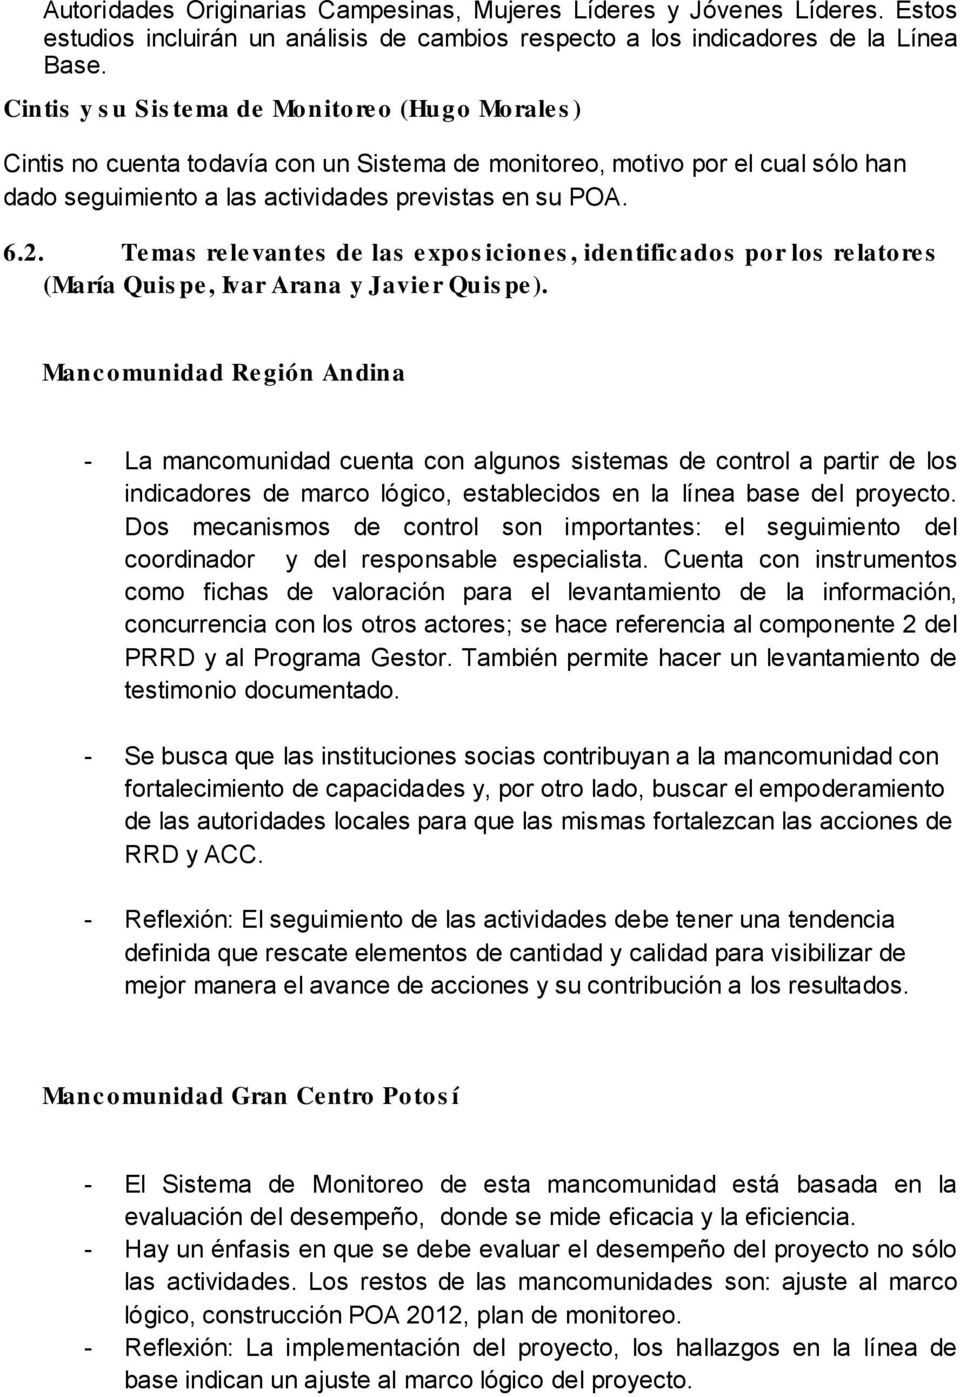 Temas relevantes de las expos iciones, identificados por los relatores (María Quis pe, Ivar Arana y Javier Quis pe).